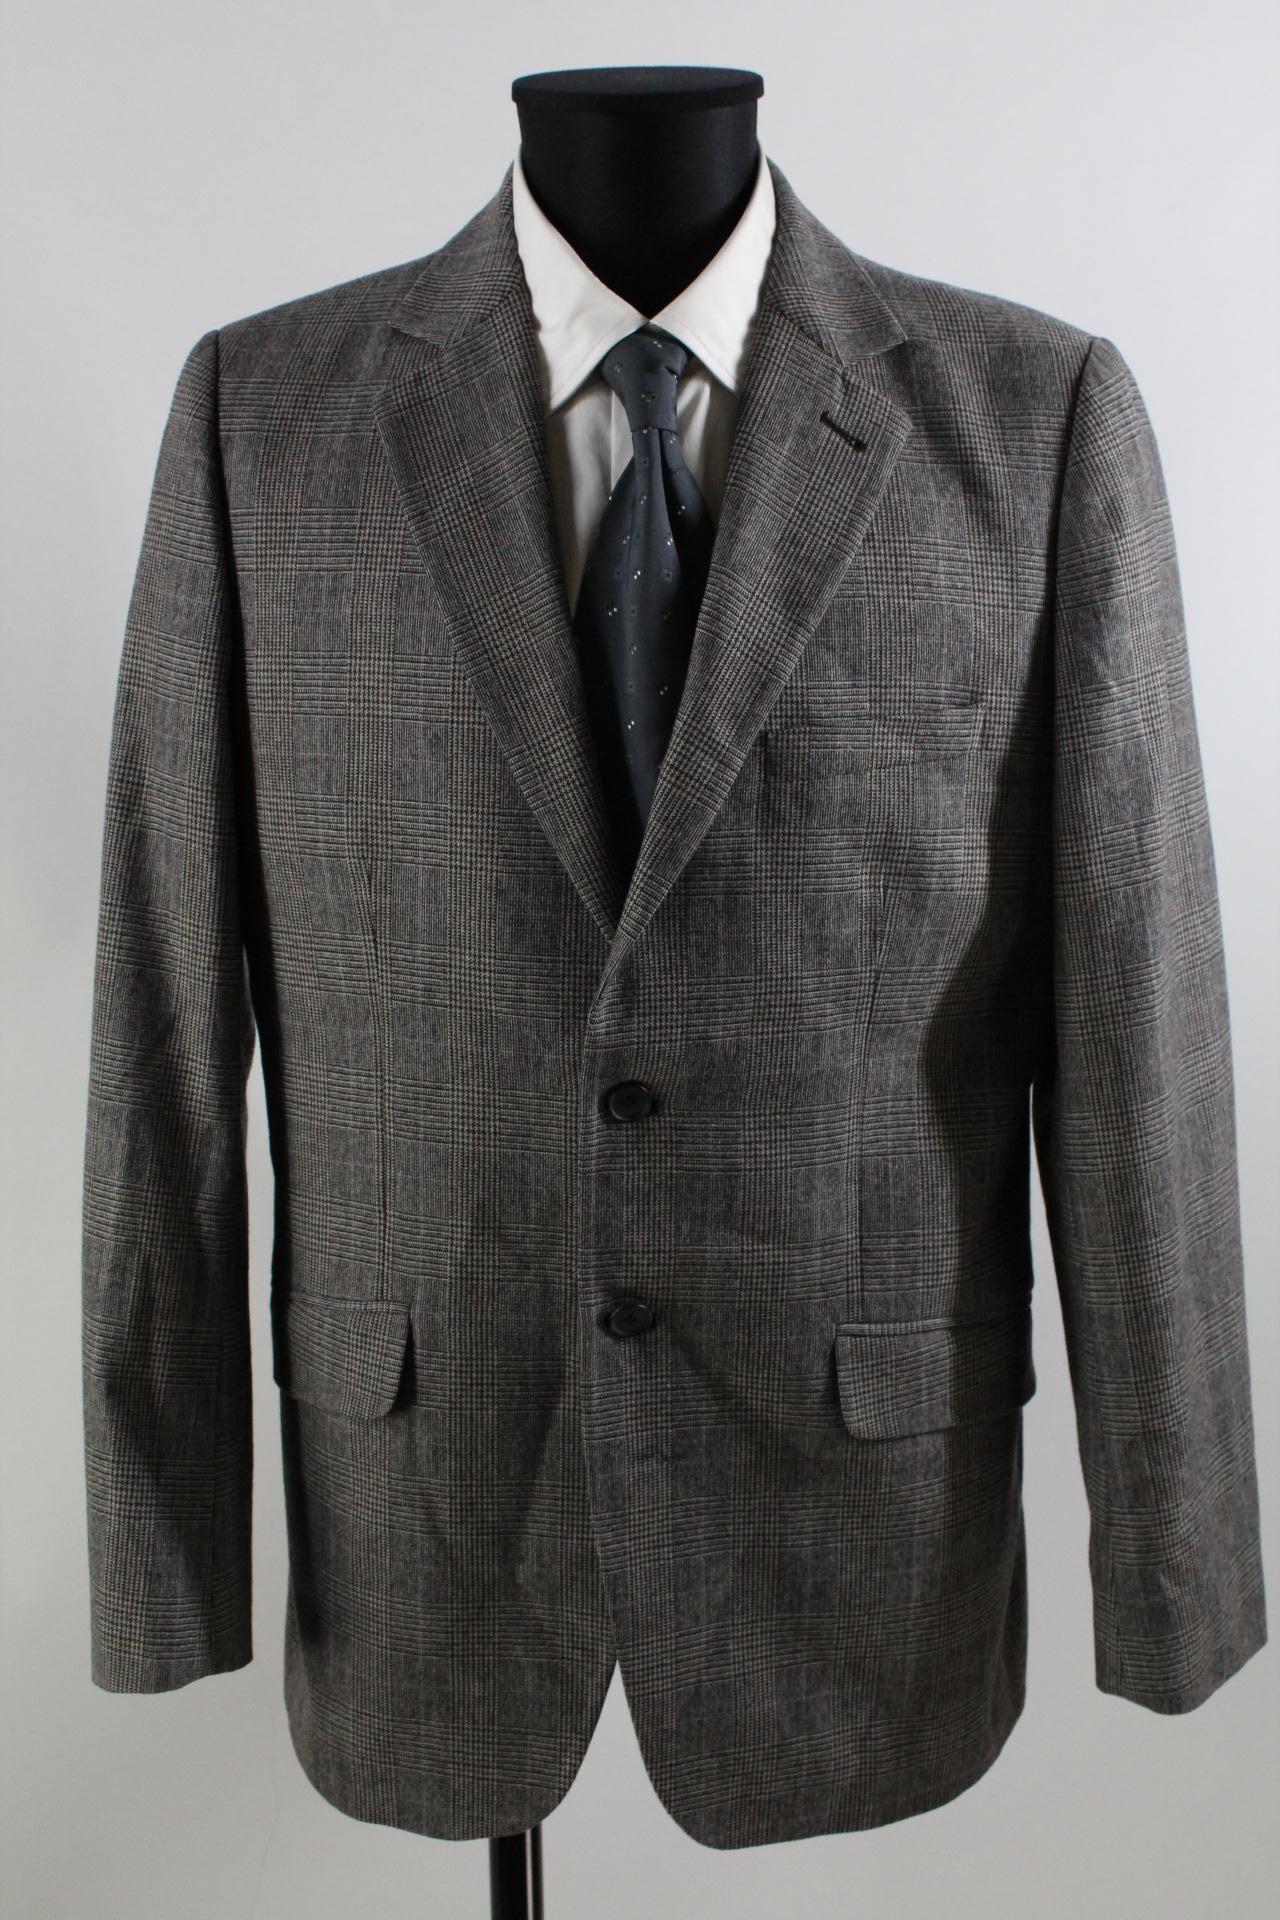 H&M Tweed-Sakko schwarz/weiß Größe 54